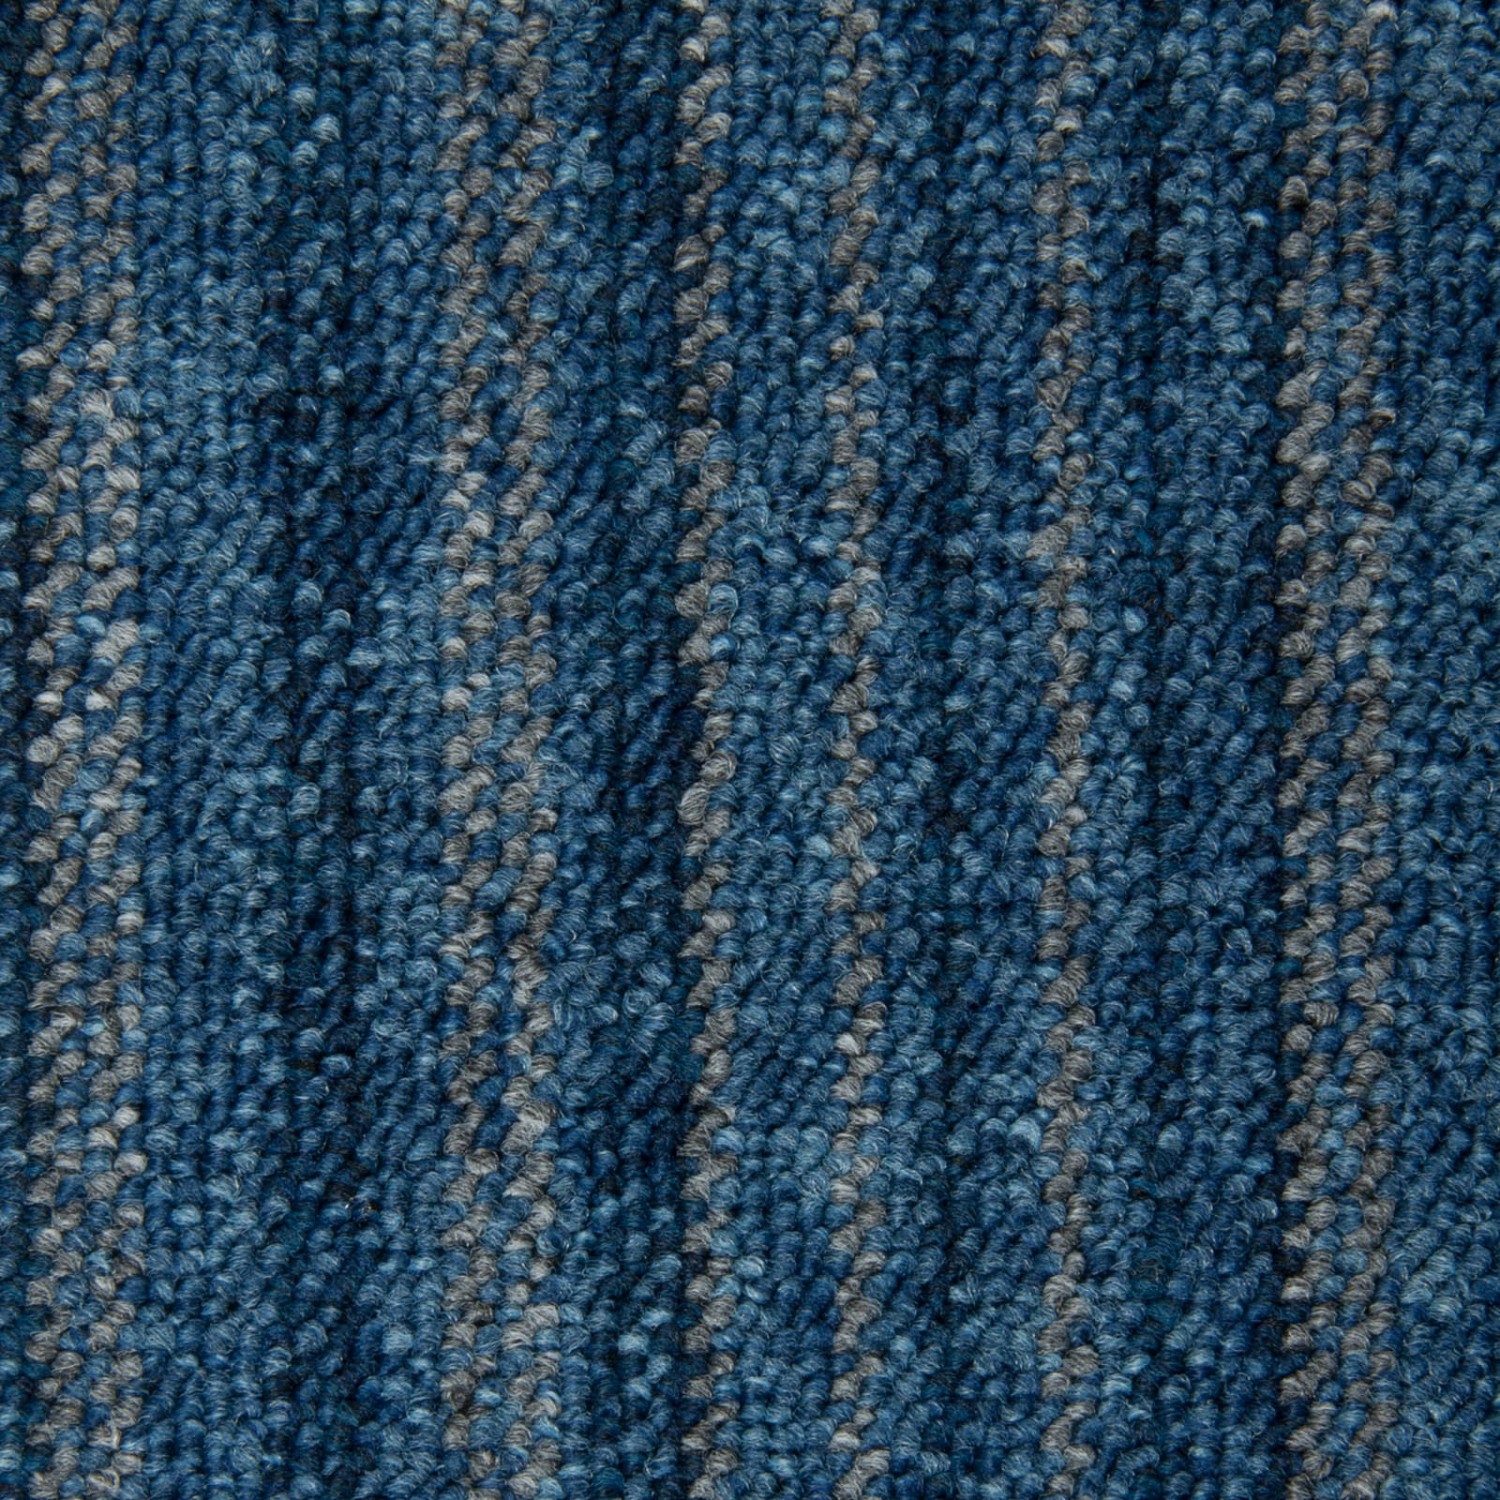 Schatex Selbstliegende Teppichdielen Blau Grau Schatex Teppichfliesen In 25x100 Cm Für Büro Und Schlafzimmer Schlingen T